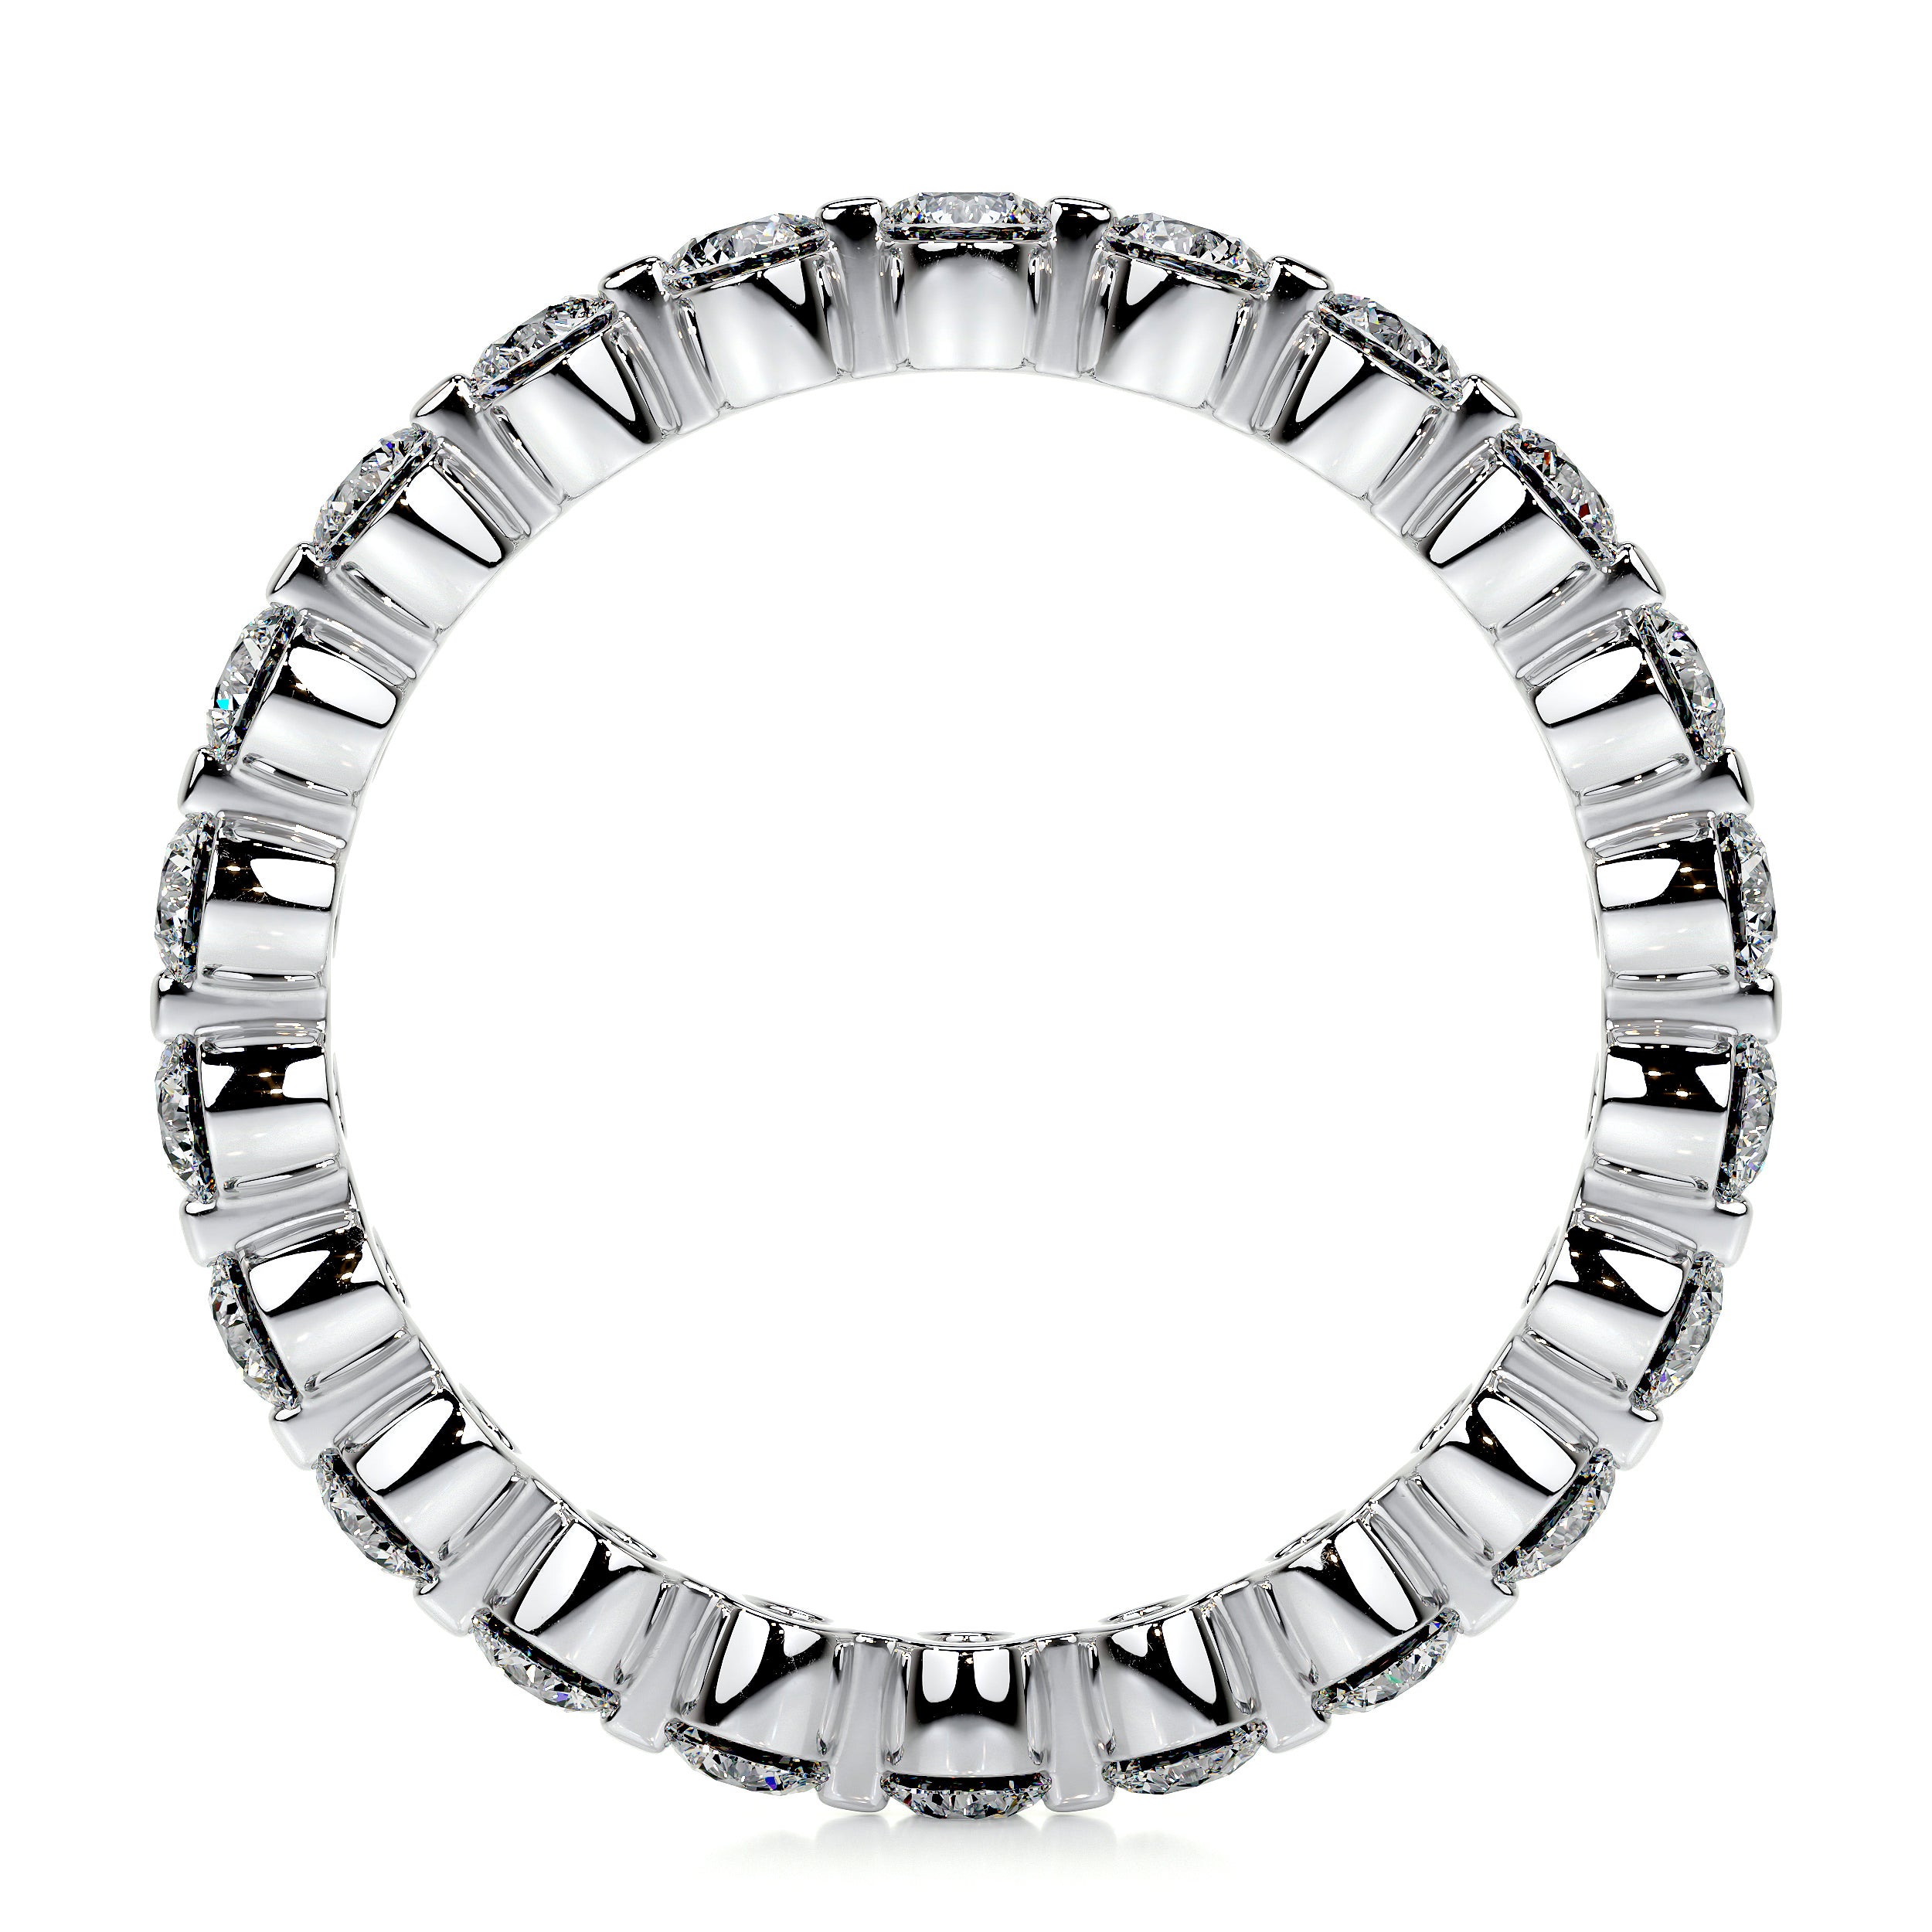 Josie Lab Grown Eternity Wedding Ring   (1 Carat) -14K White Gold